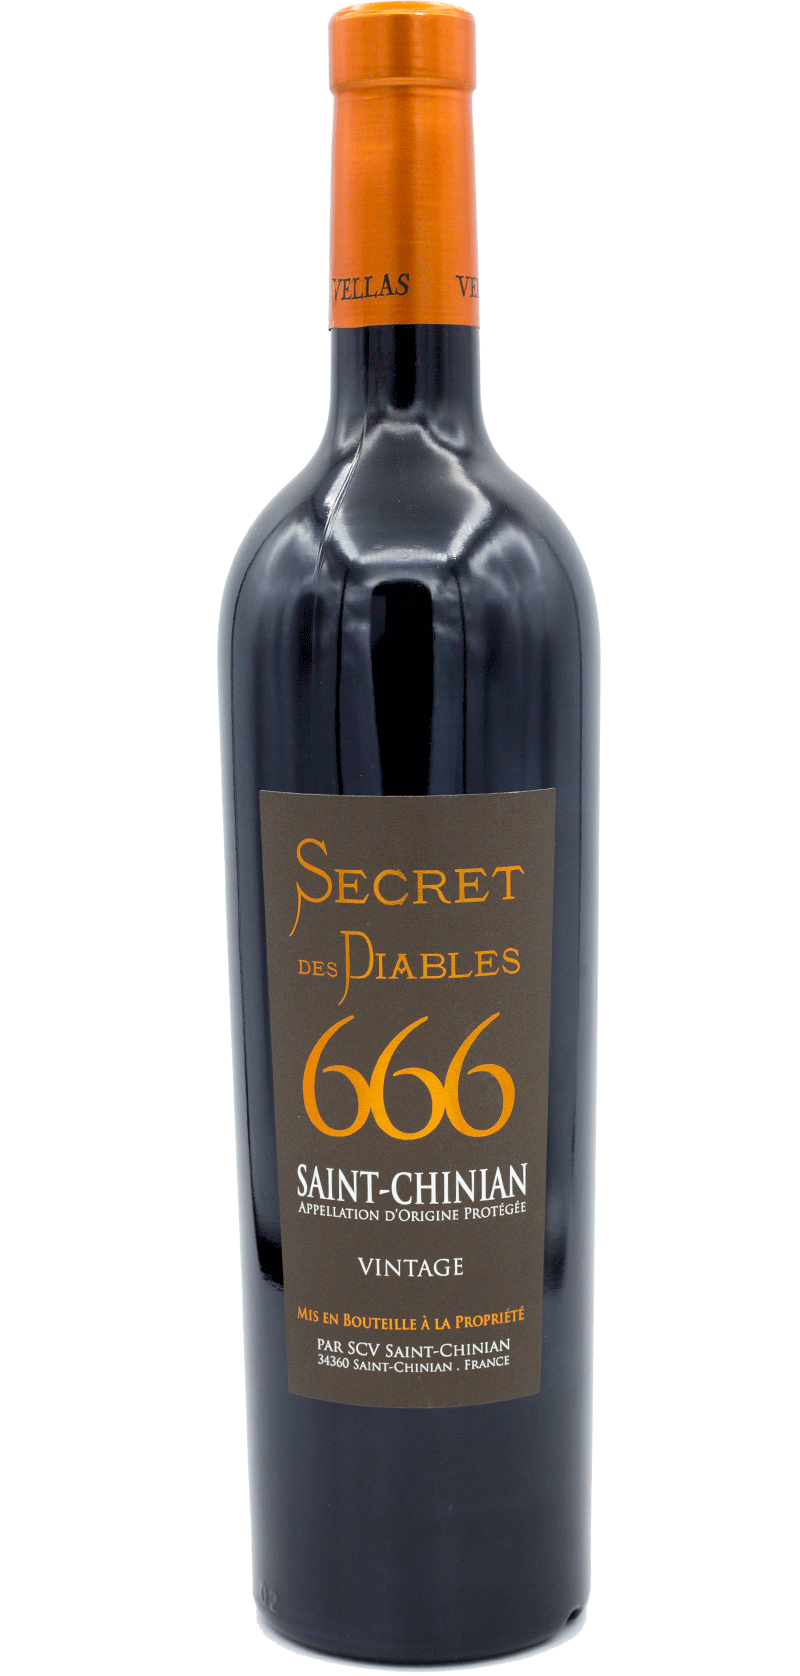 Secret des Diables 666  - 1